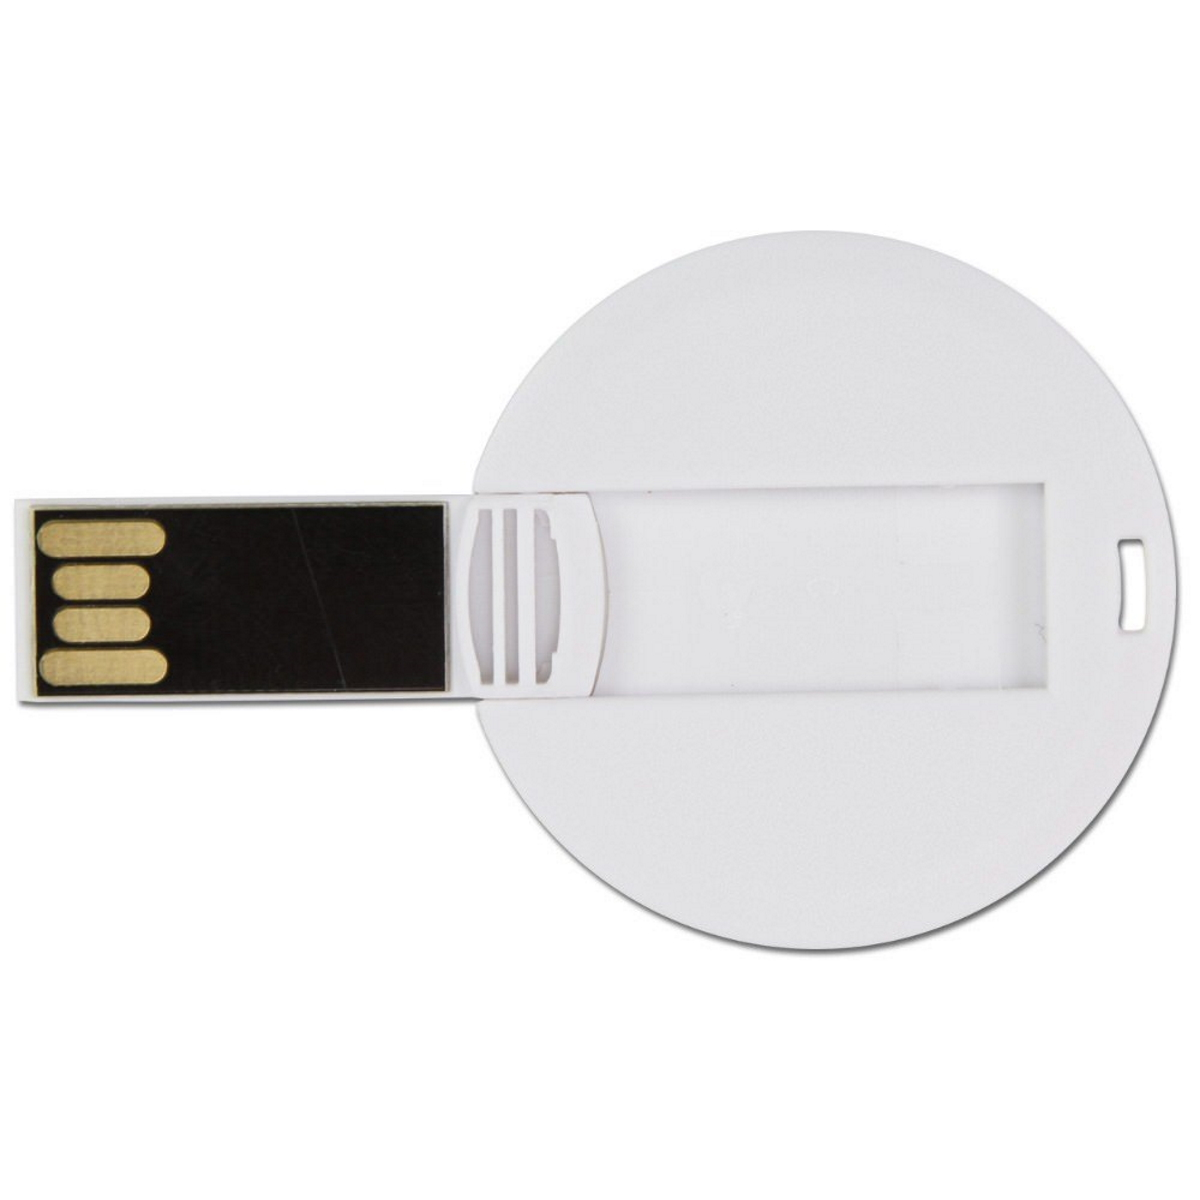 GB) USB ® GERMANY DISC 16 USB-Stick (Weiß,